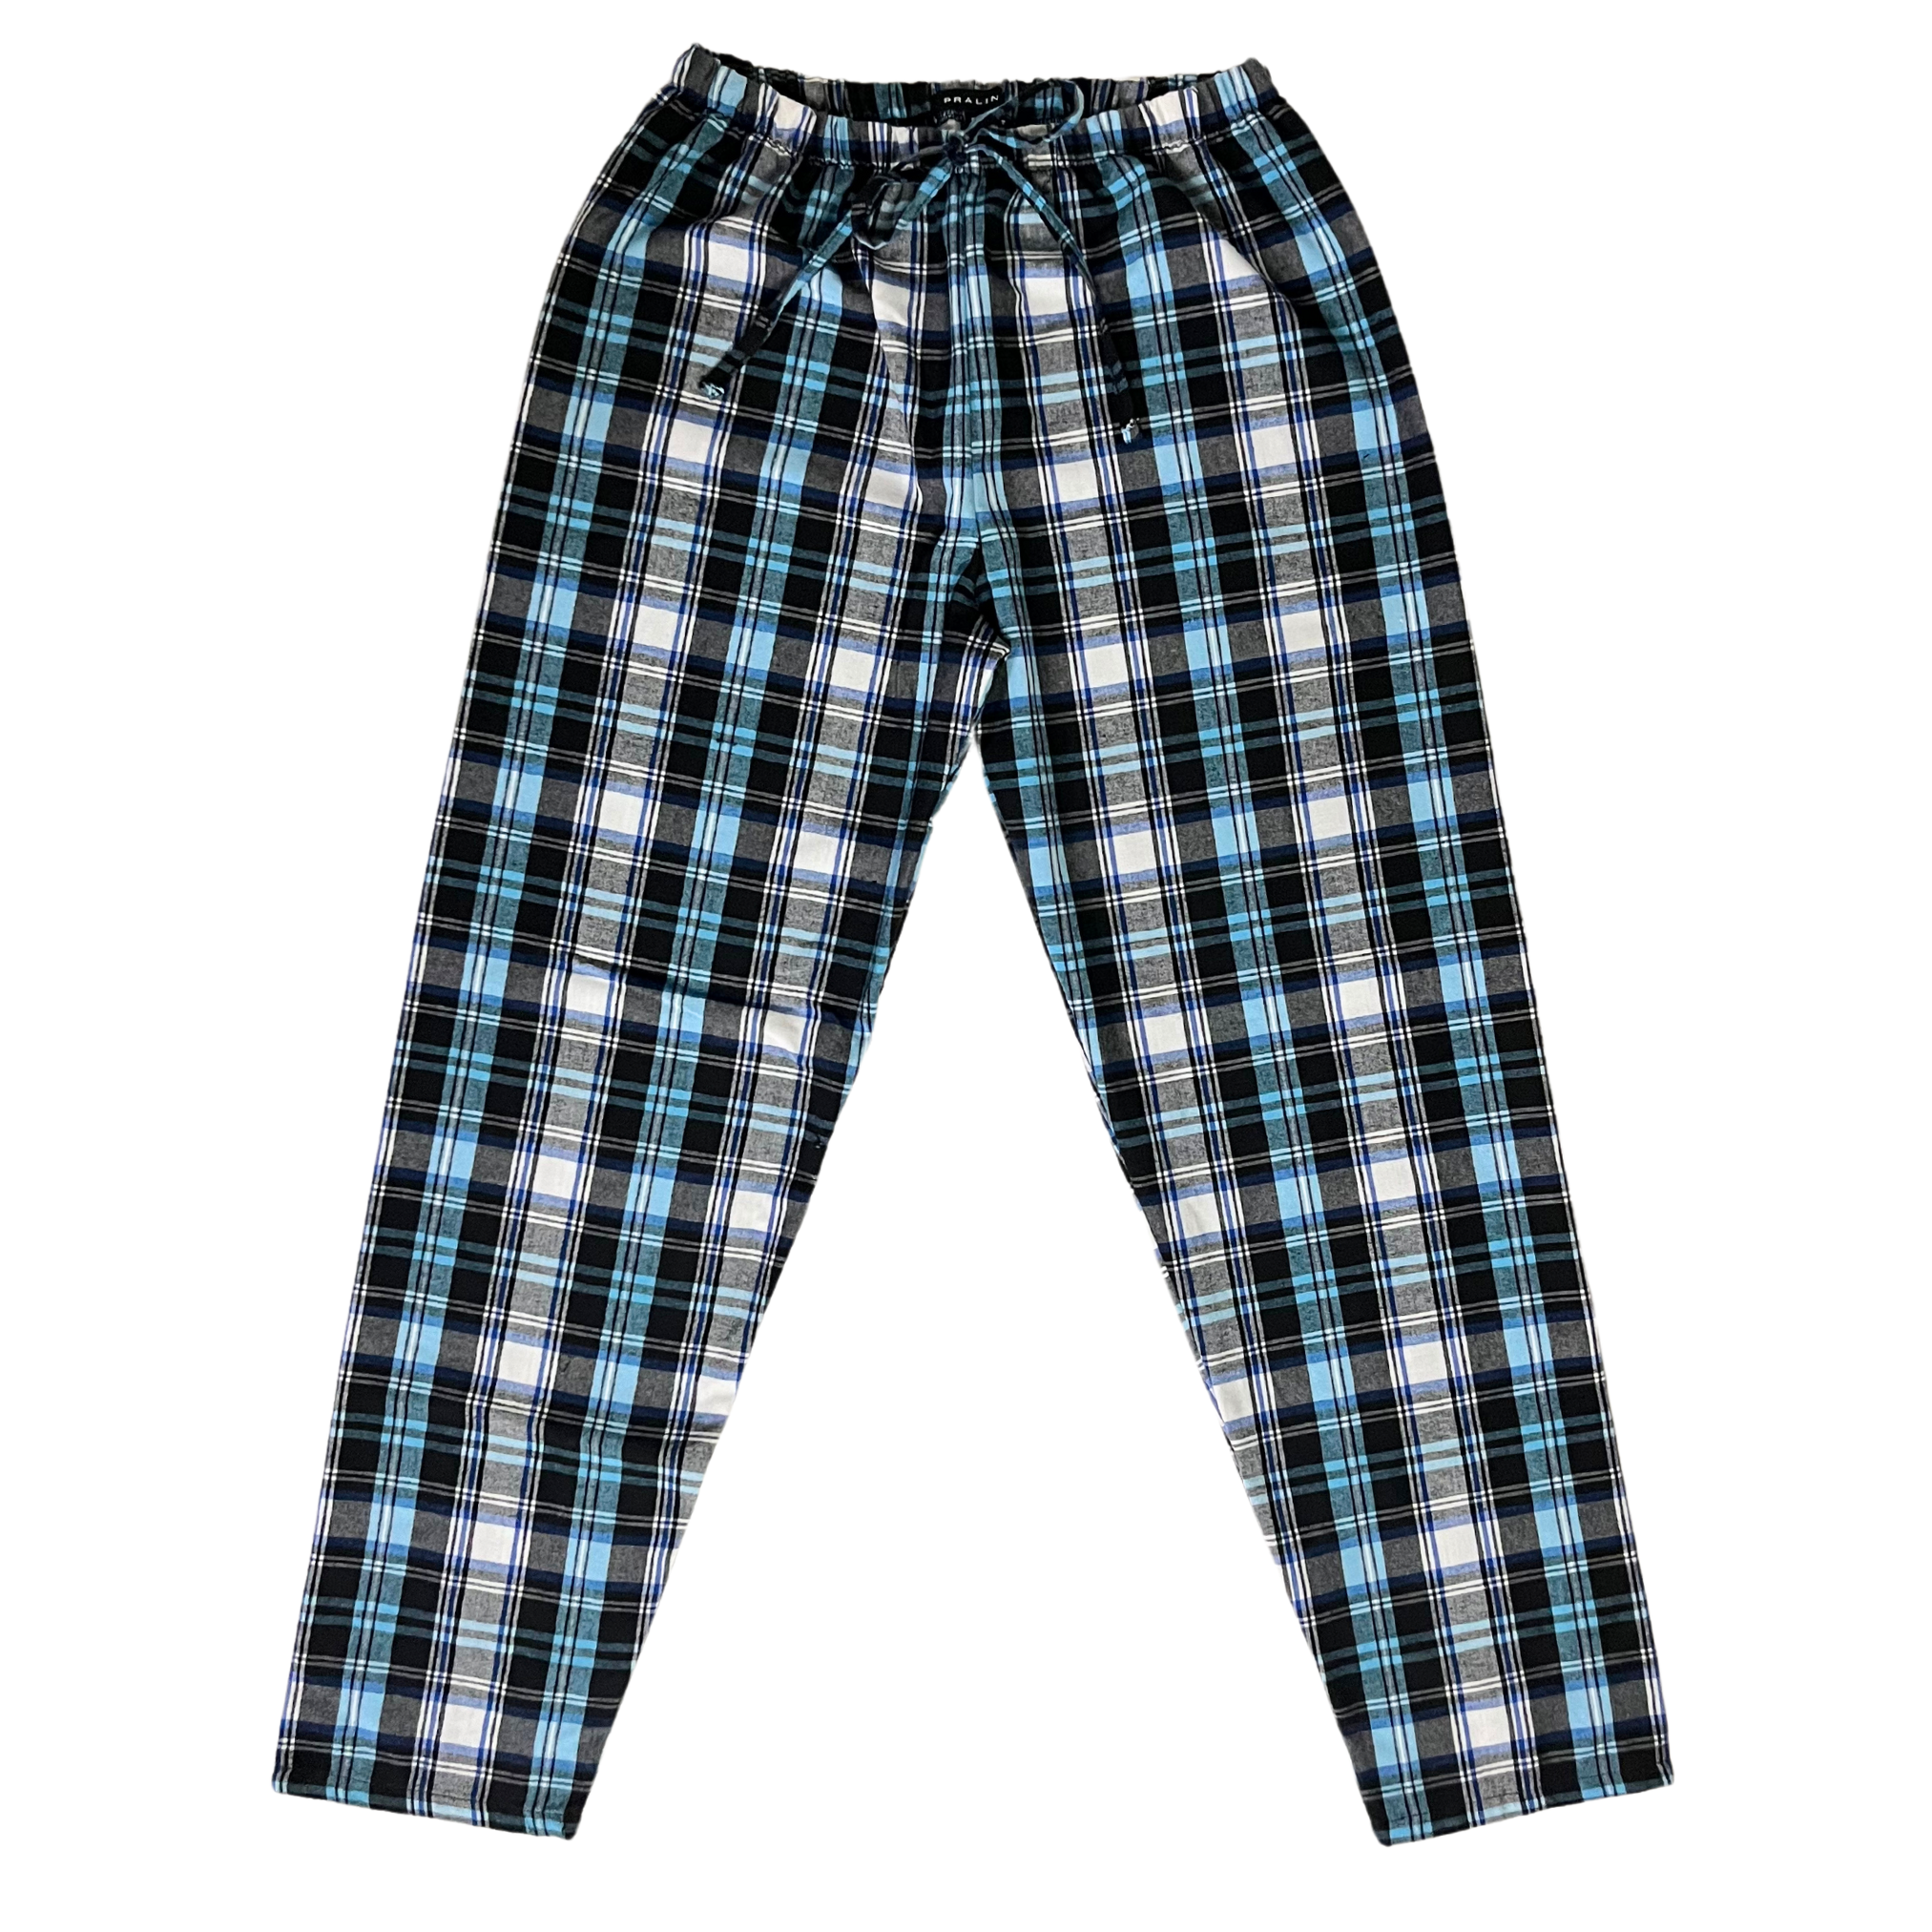 Pantalón de Pijama Negro/Celeste/Azul Unisex Adulto 00012